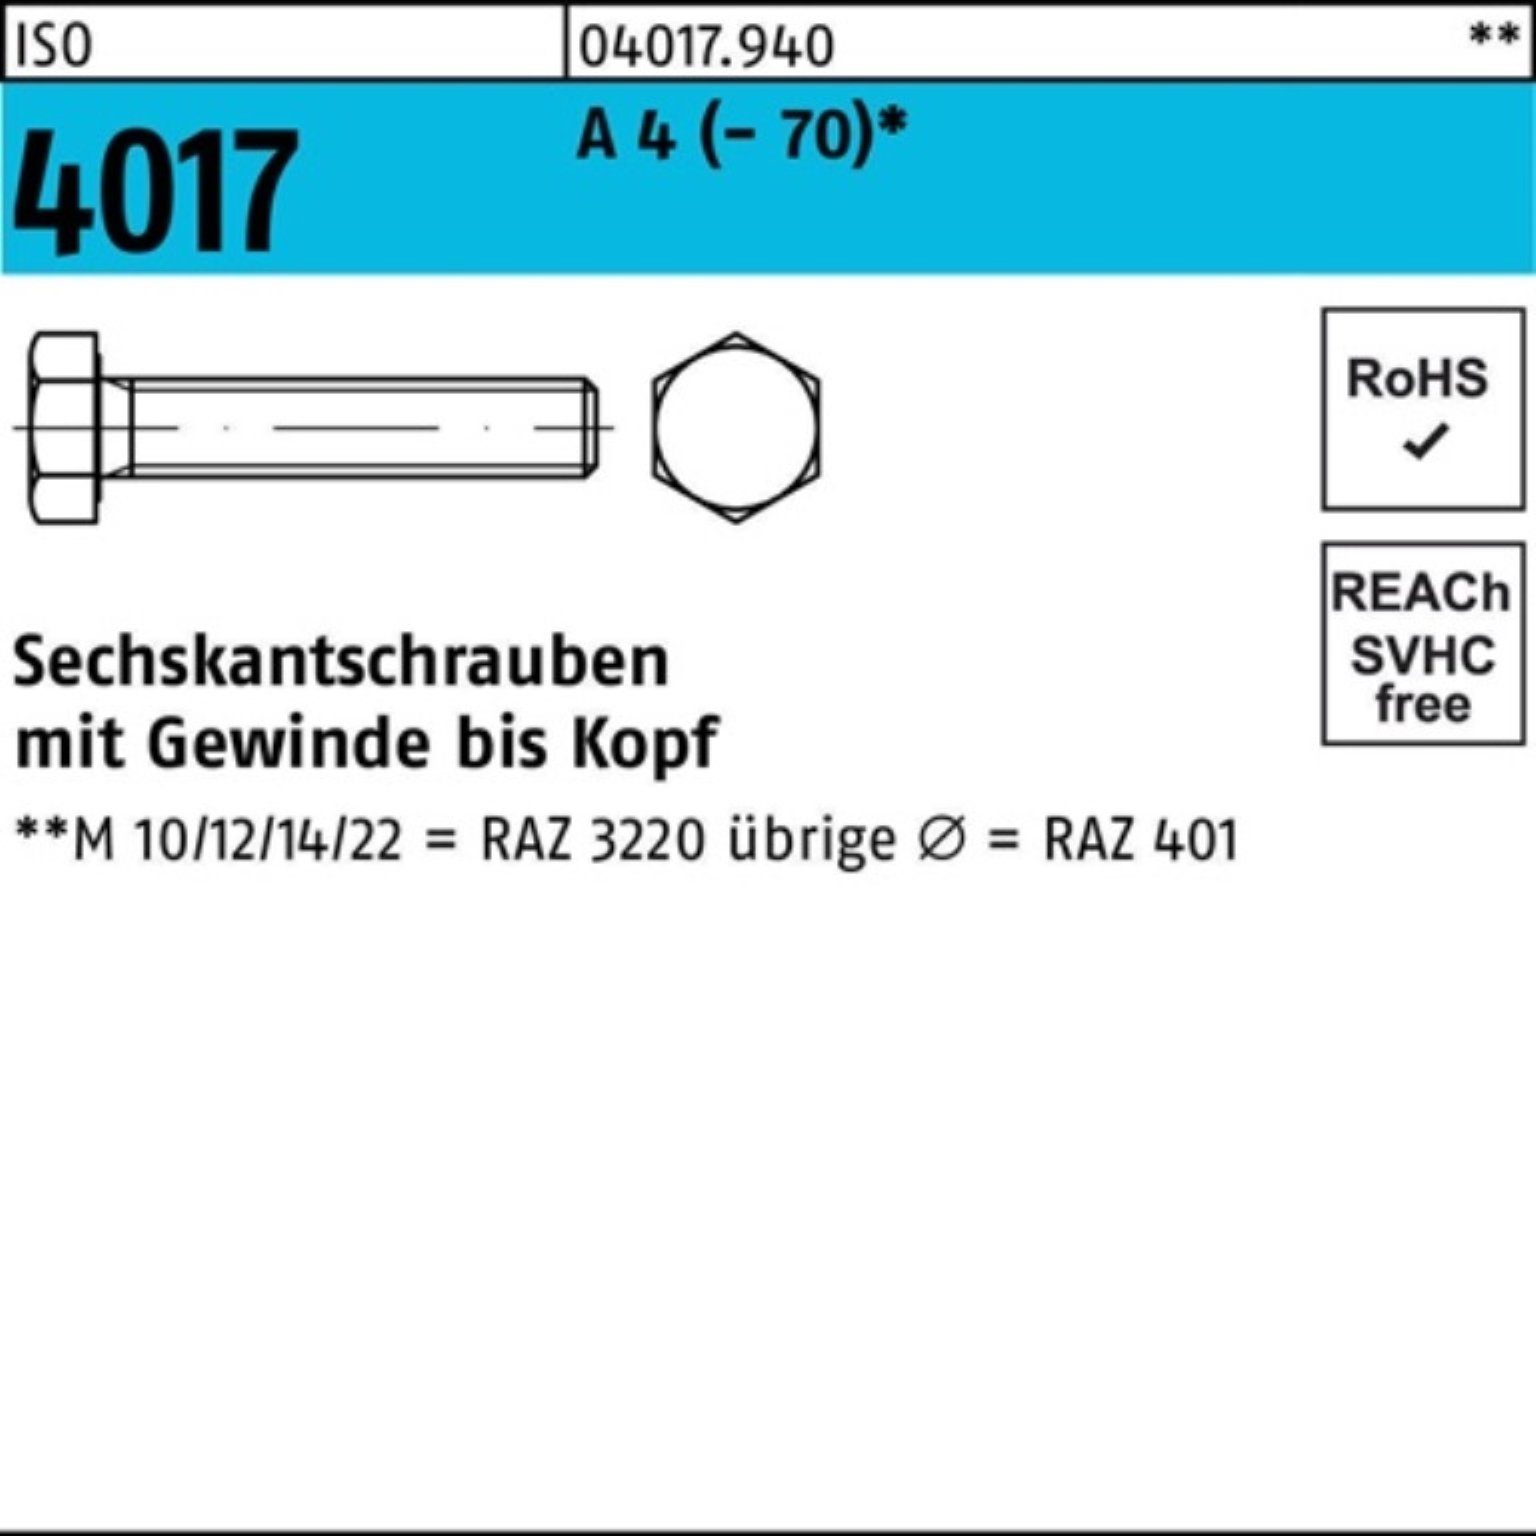 Bufab Sechskantschraube 200er Pack Sechskantschraube ISO 4017 VG M8x 30 A 4 (70) 200 Stück